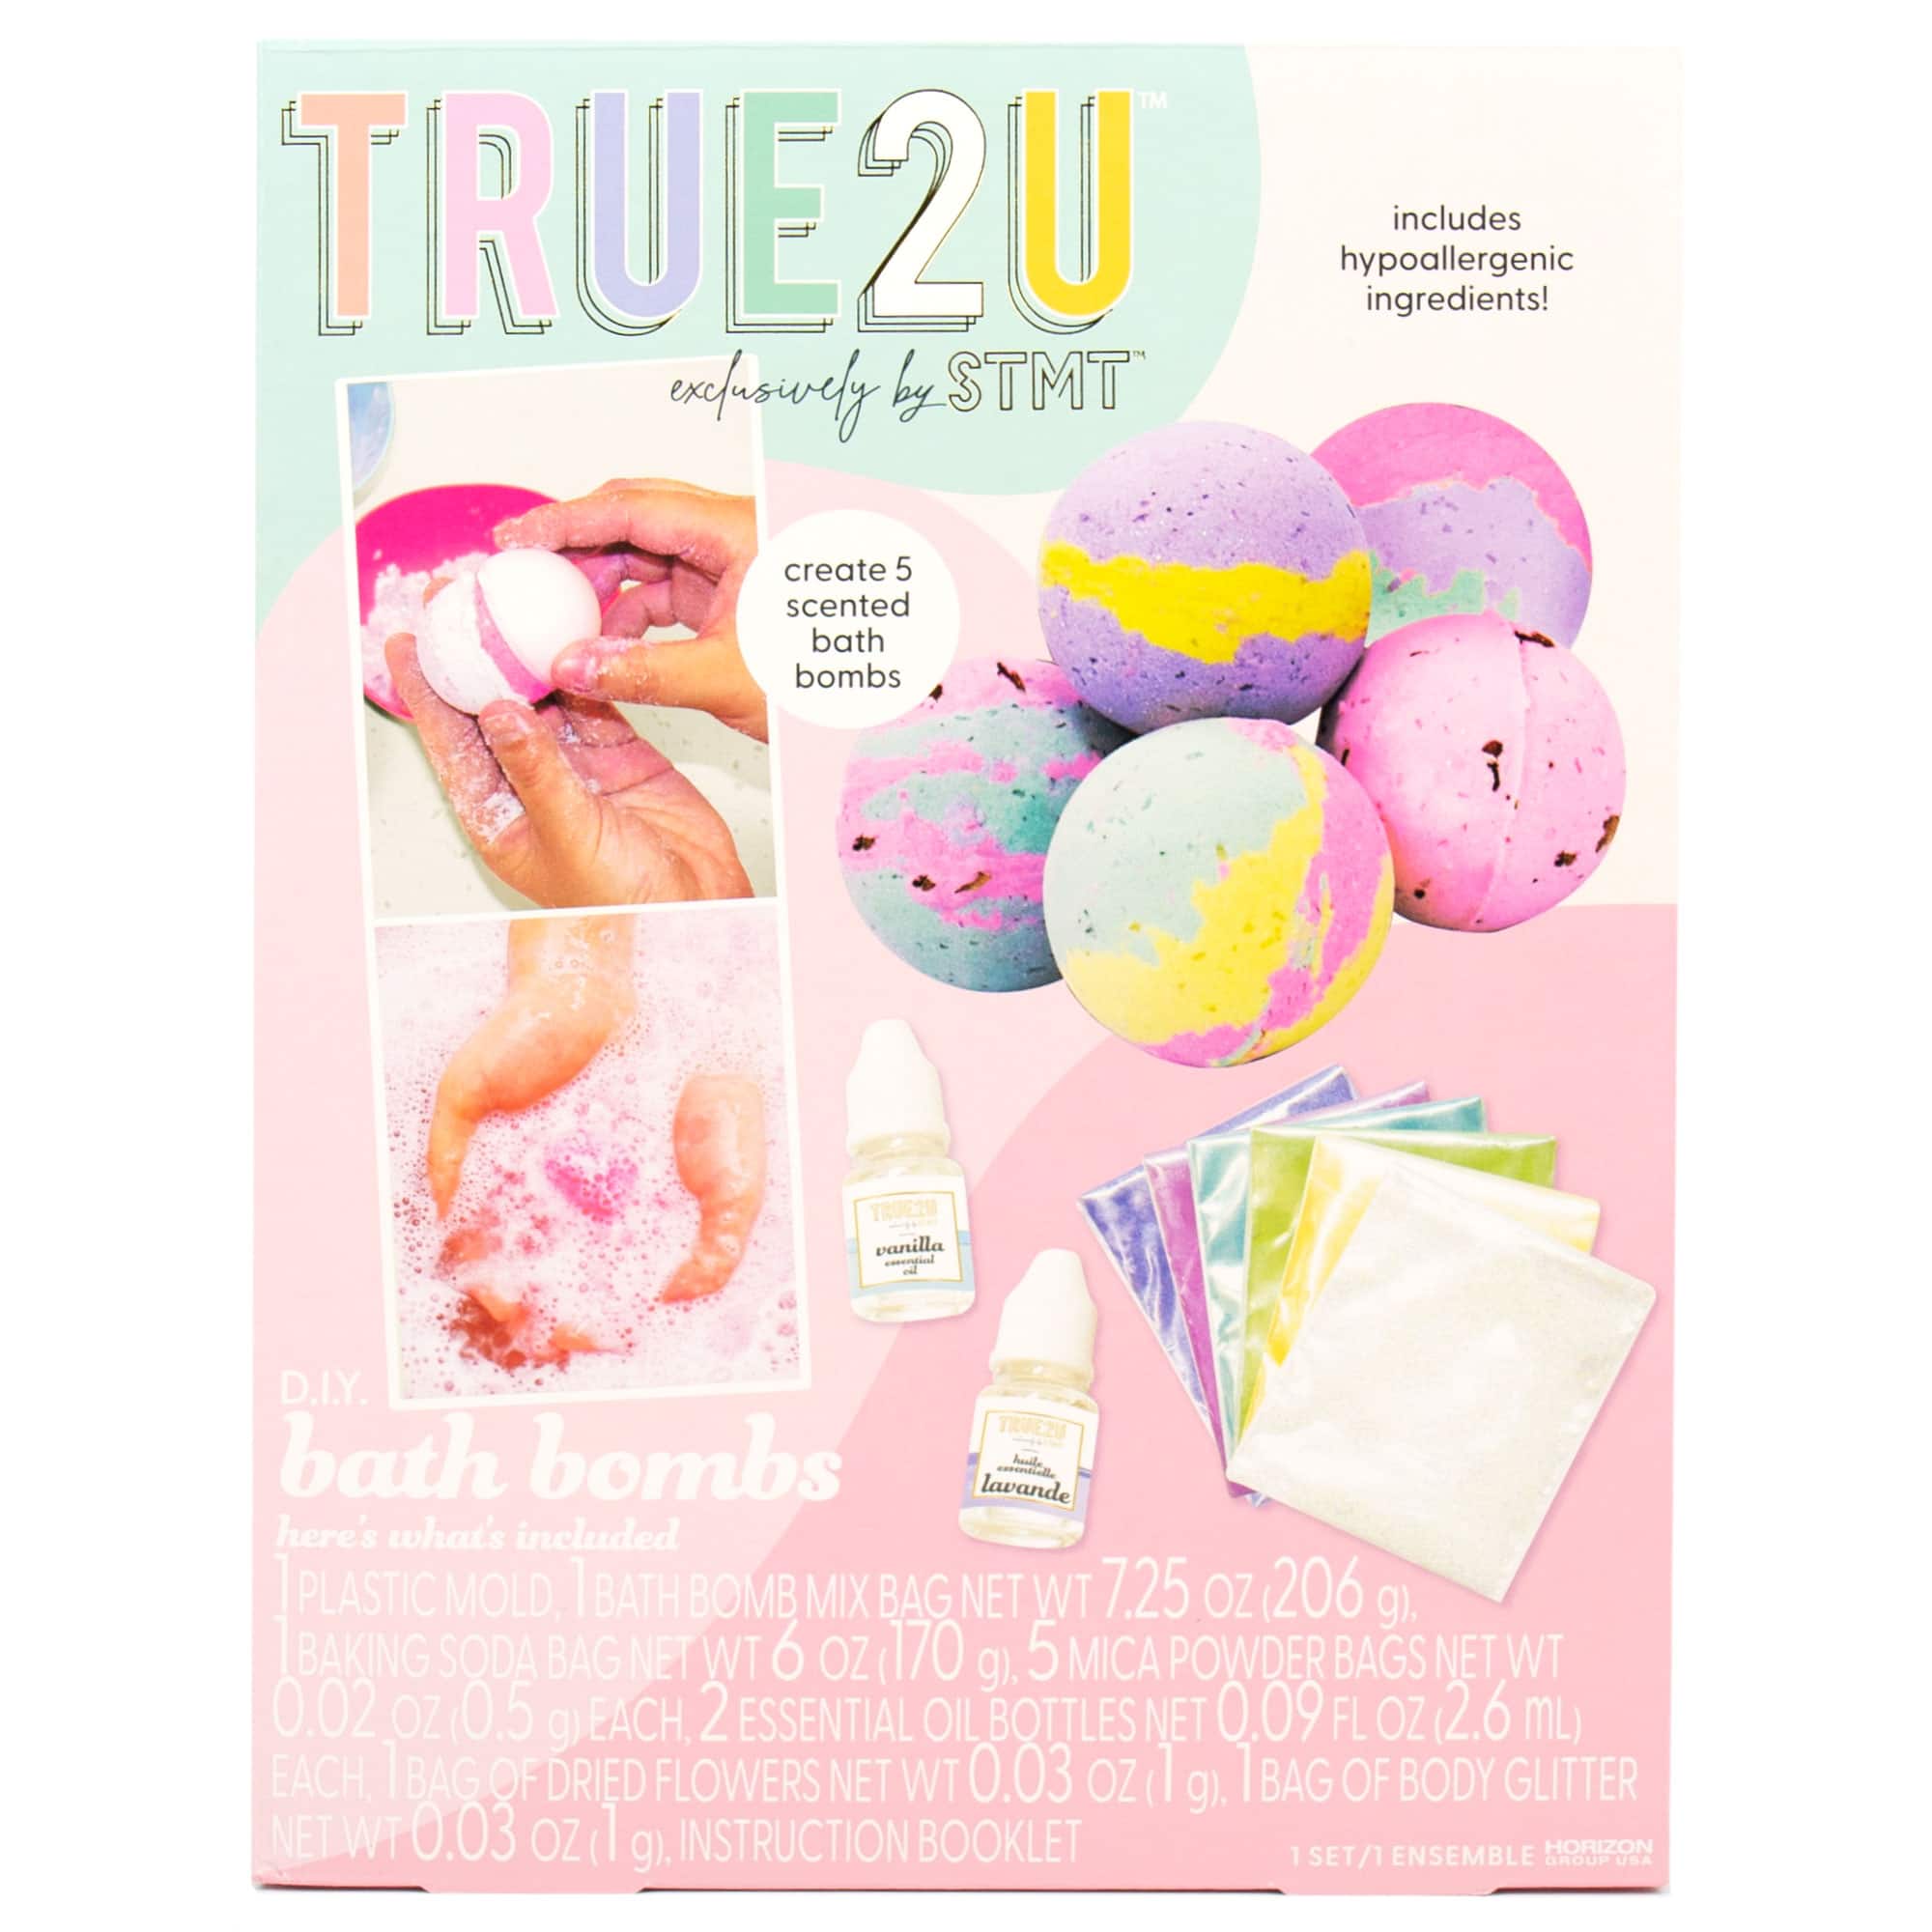 True2U D.I.Y. Bath Bombs Kit, Size: 12 x 9 x 2